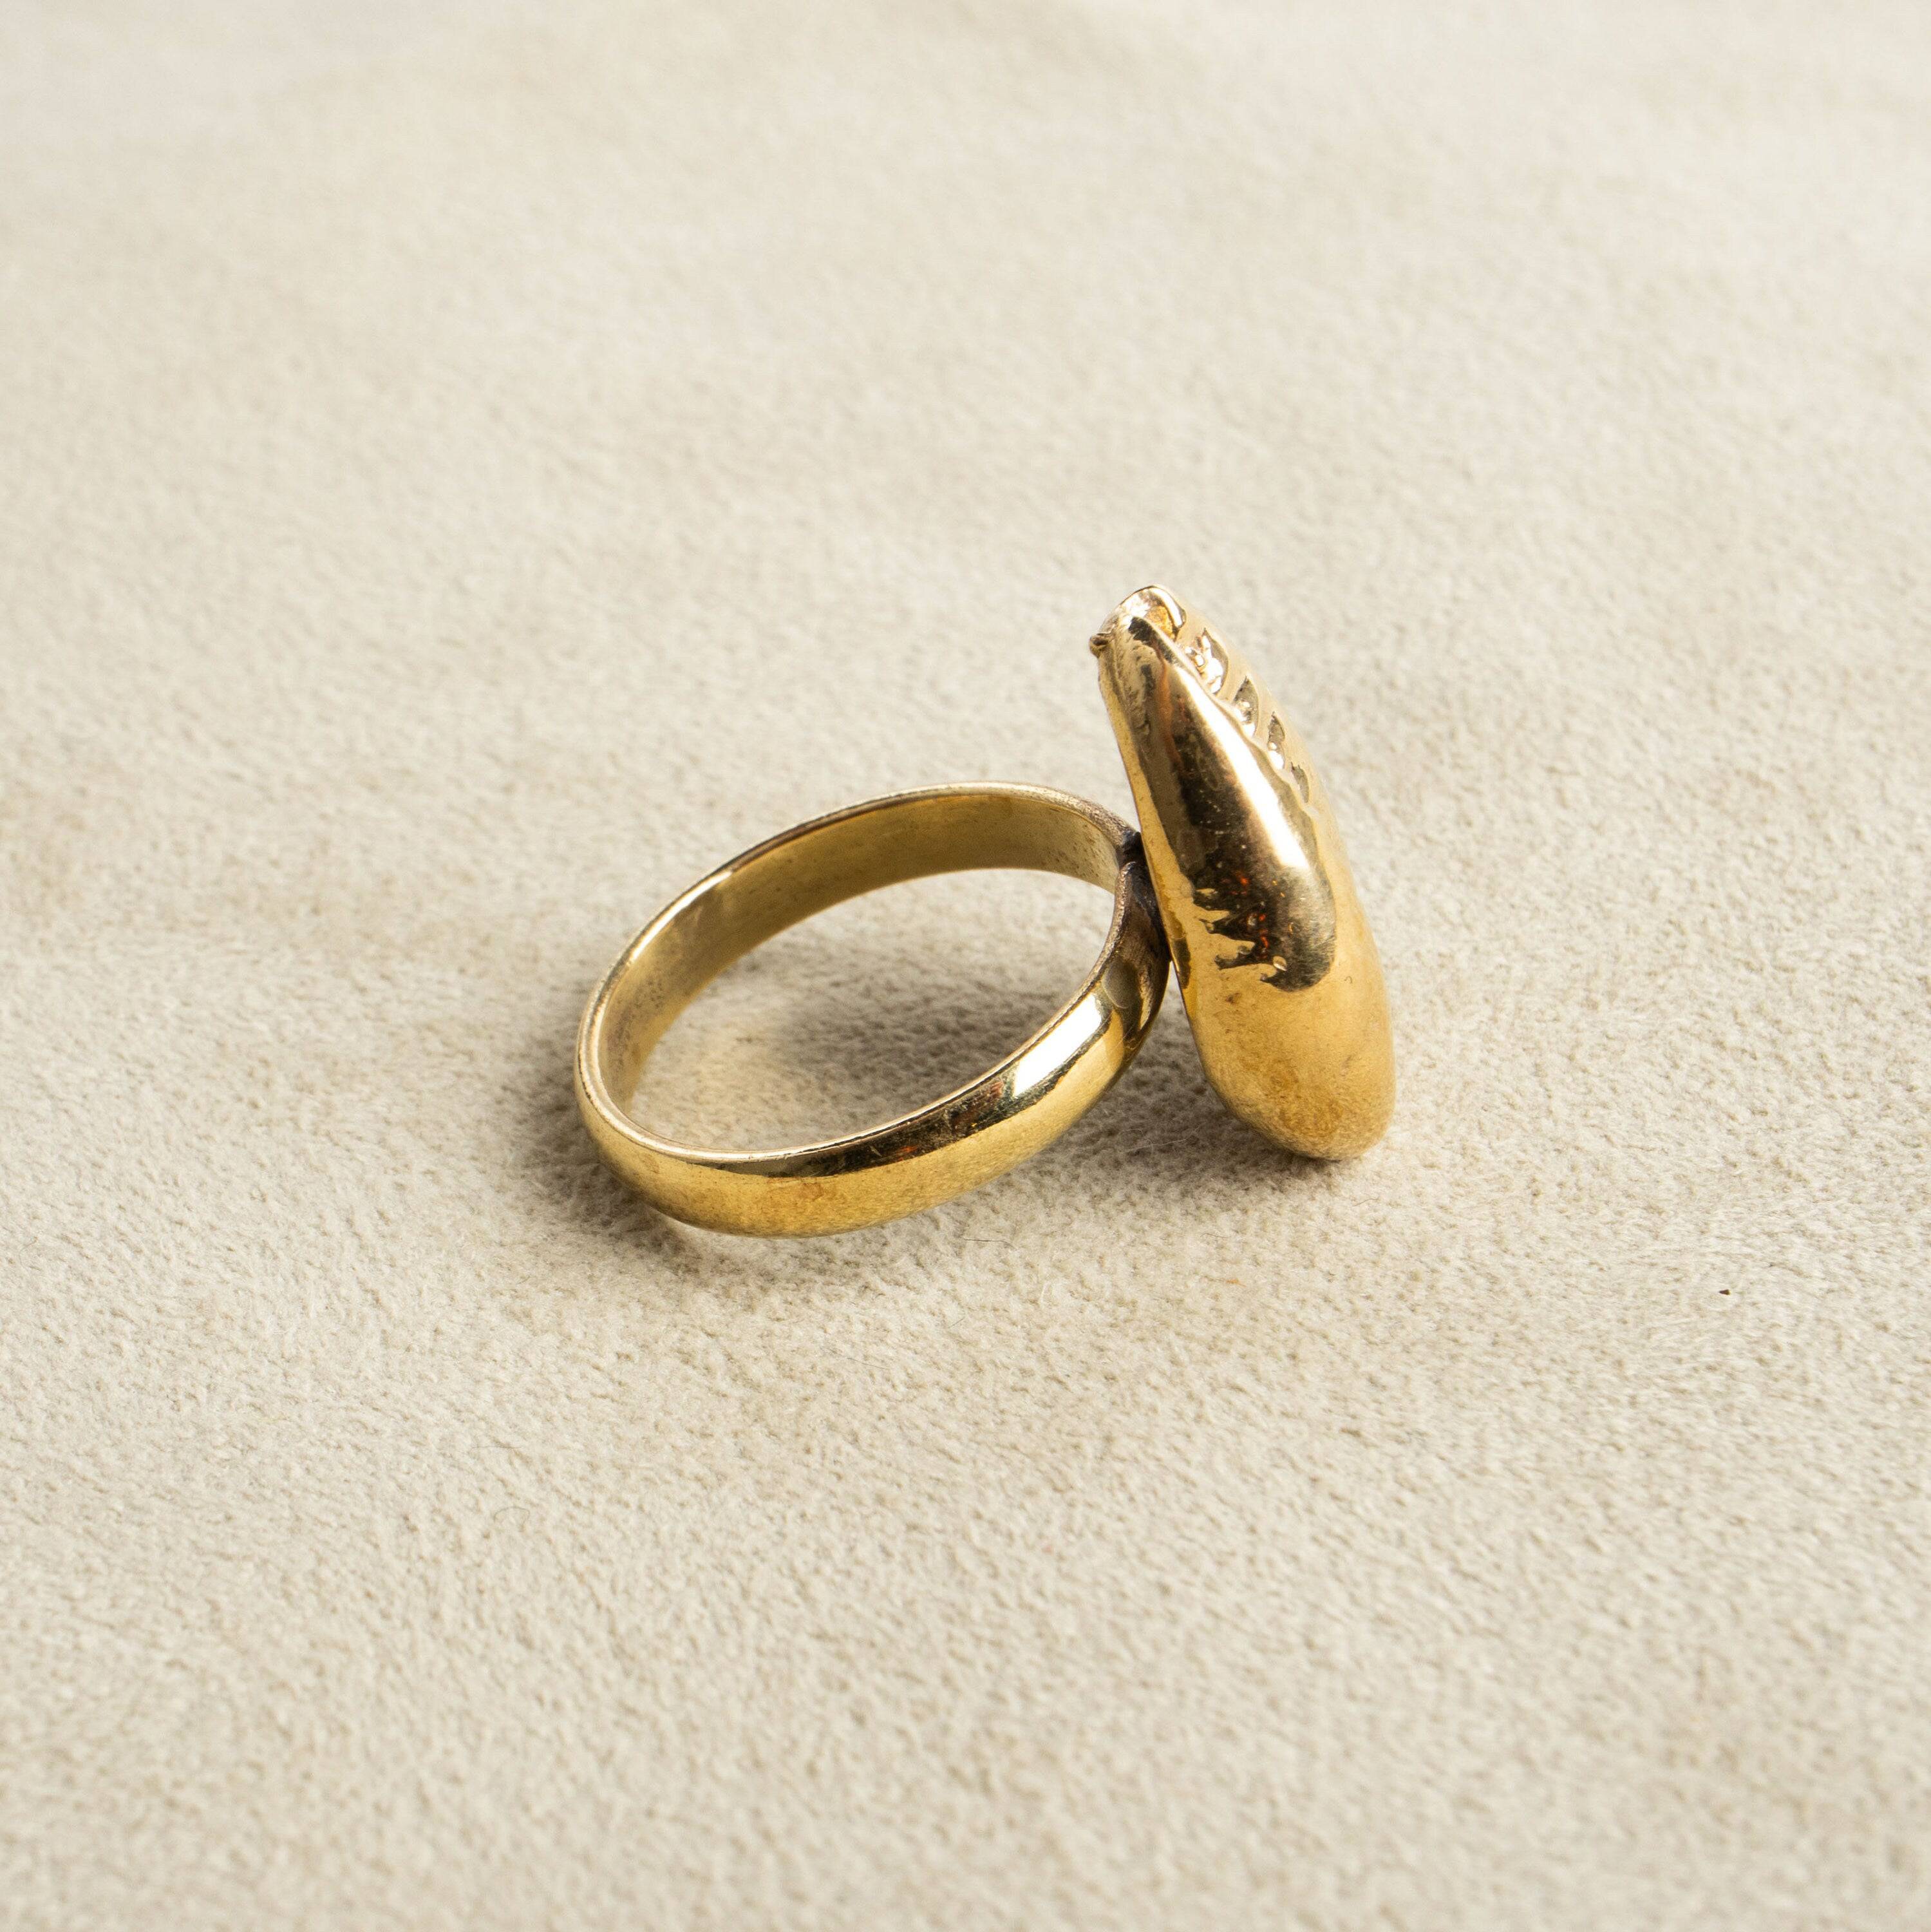 Großer Ring mit Kauri Muschel gold handgemacht - NooeBerlin